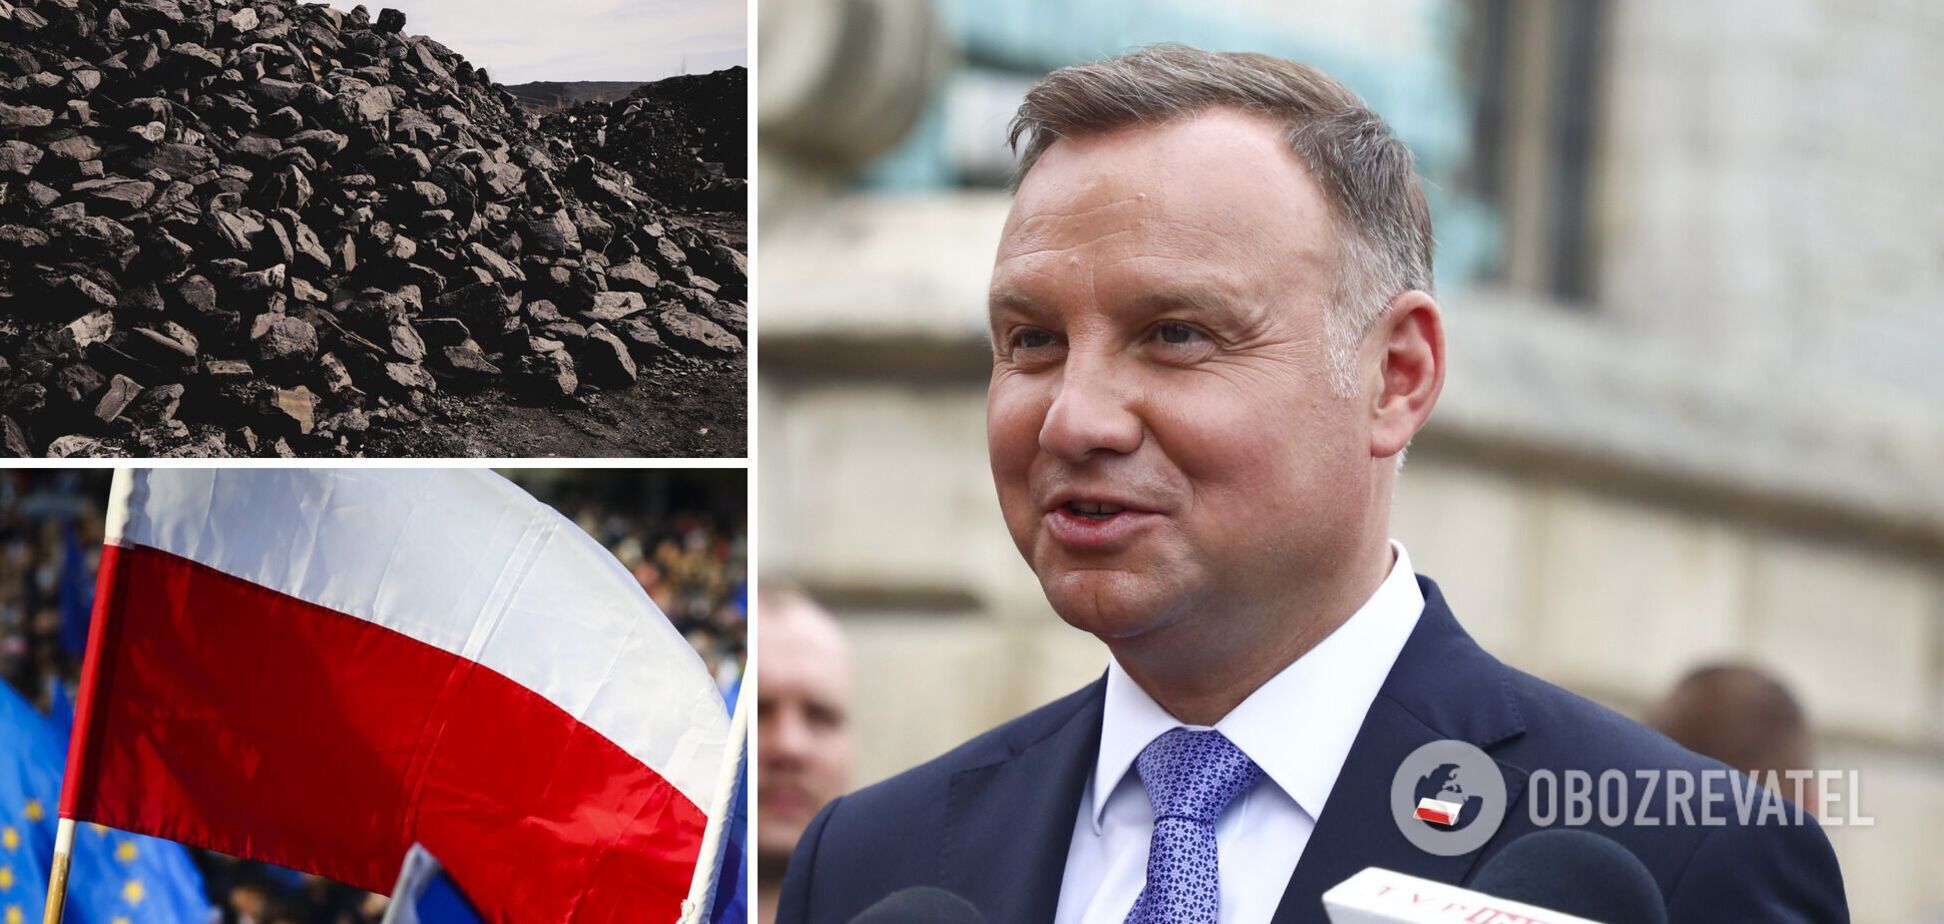 Польща окремо заборонила вугілля з РФ на додаток до загальноєвропейських санкцій